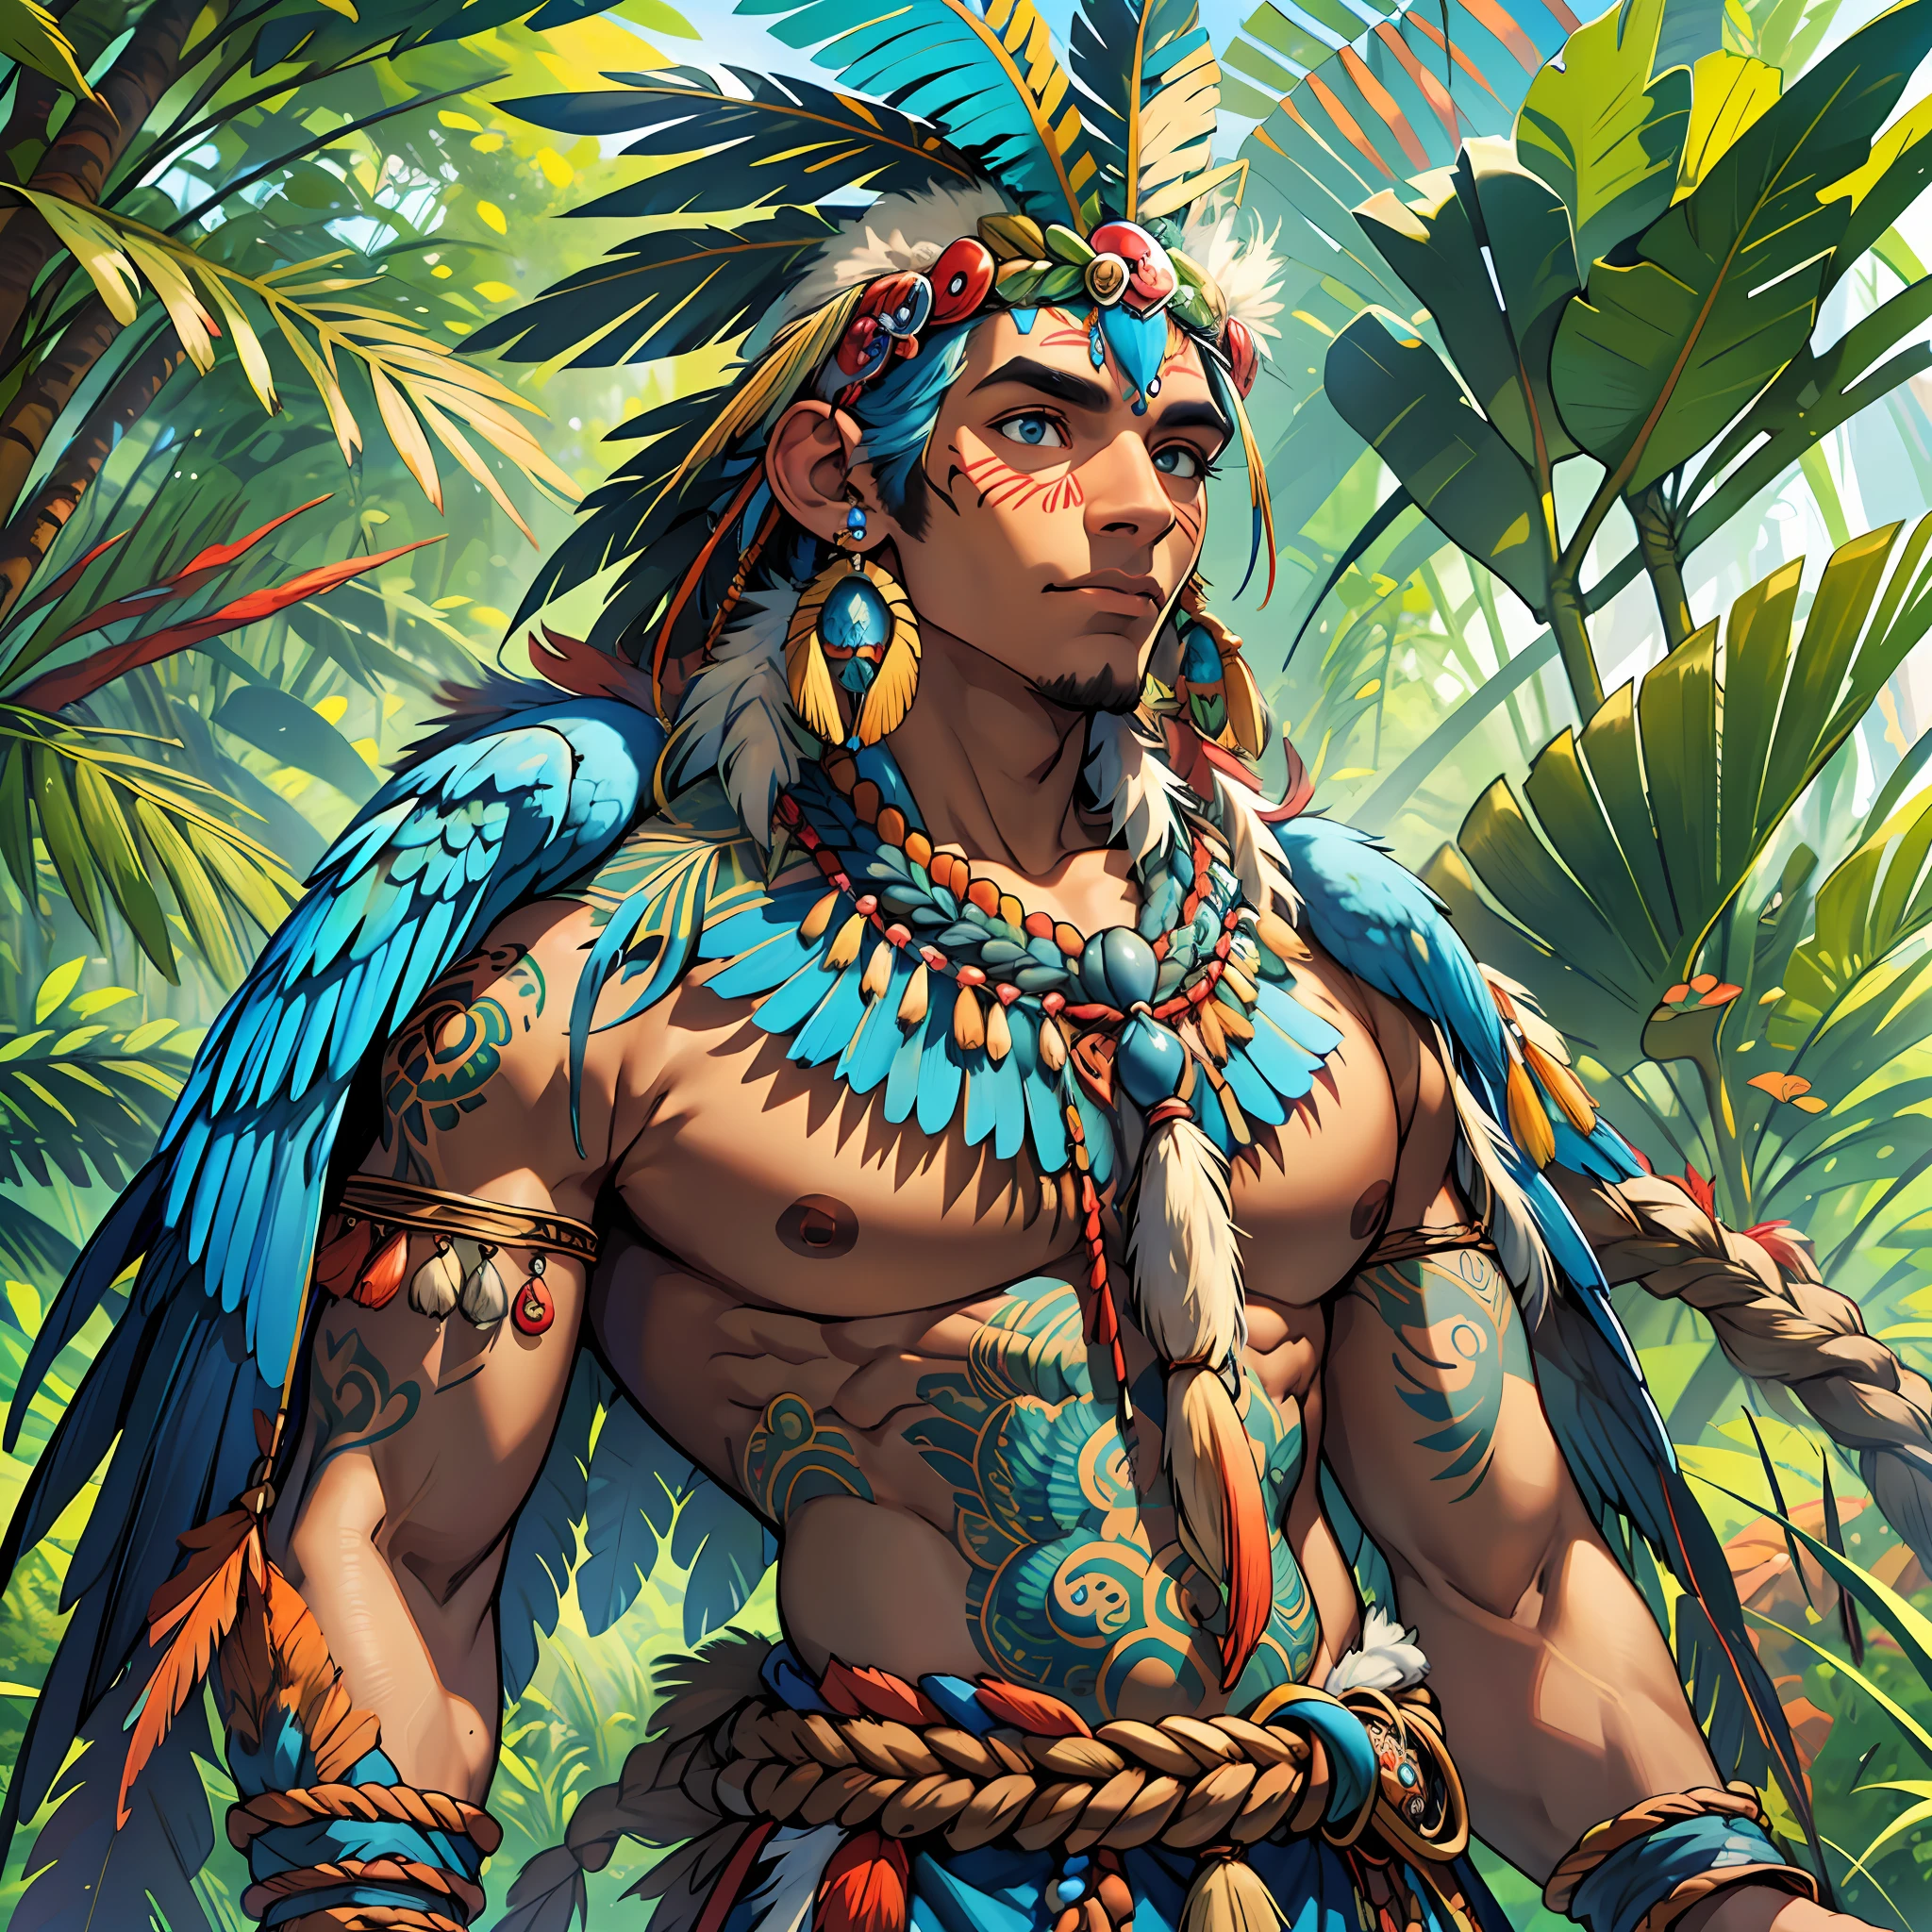 의인화 된 인간형 신 토착 갈색 피부에 푸른 잉꼬 날개와 인간의 몸, 그리고 몸에 푸른 잉꼬 깃털이 있습니다, 완벽한 몸, 숲의 신성한 수호자, 브라질 사람, 아마존의 신성한 풍경, 투피 과라니 옷